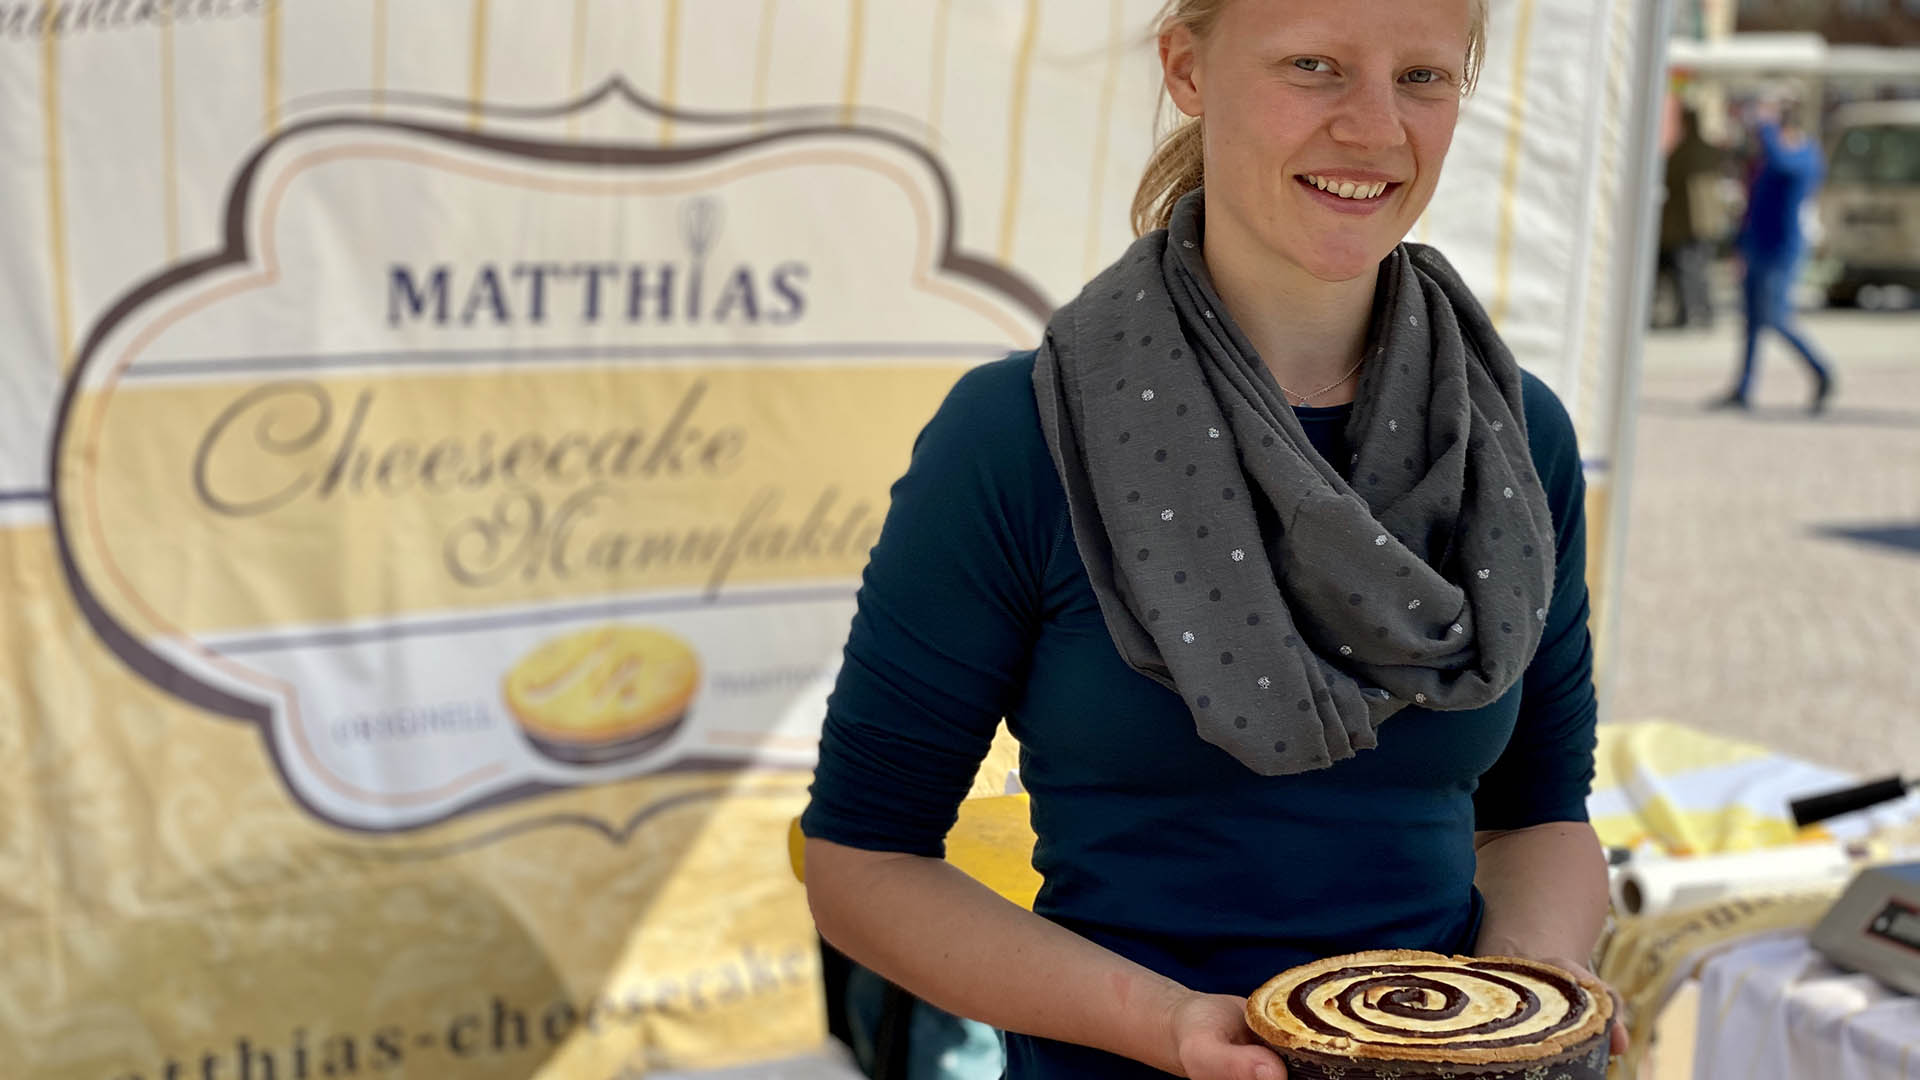 Eine junge Frau hält einen Käsekuchen in den Händen vor sich und lächelt in die Kameria. Hinter ihr hängt ein Werbeplakat von "Matthias Cheesecake Manufaktur".